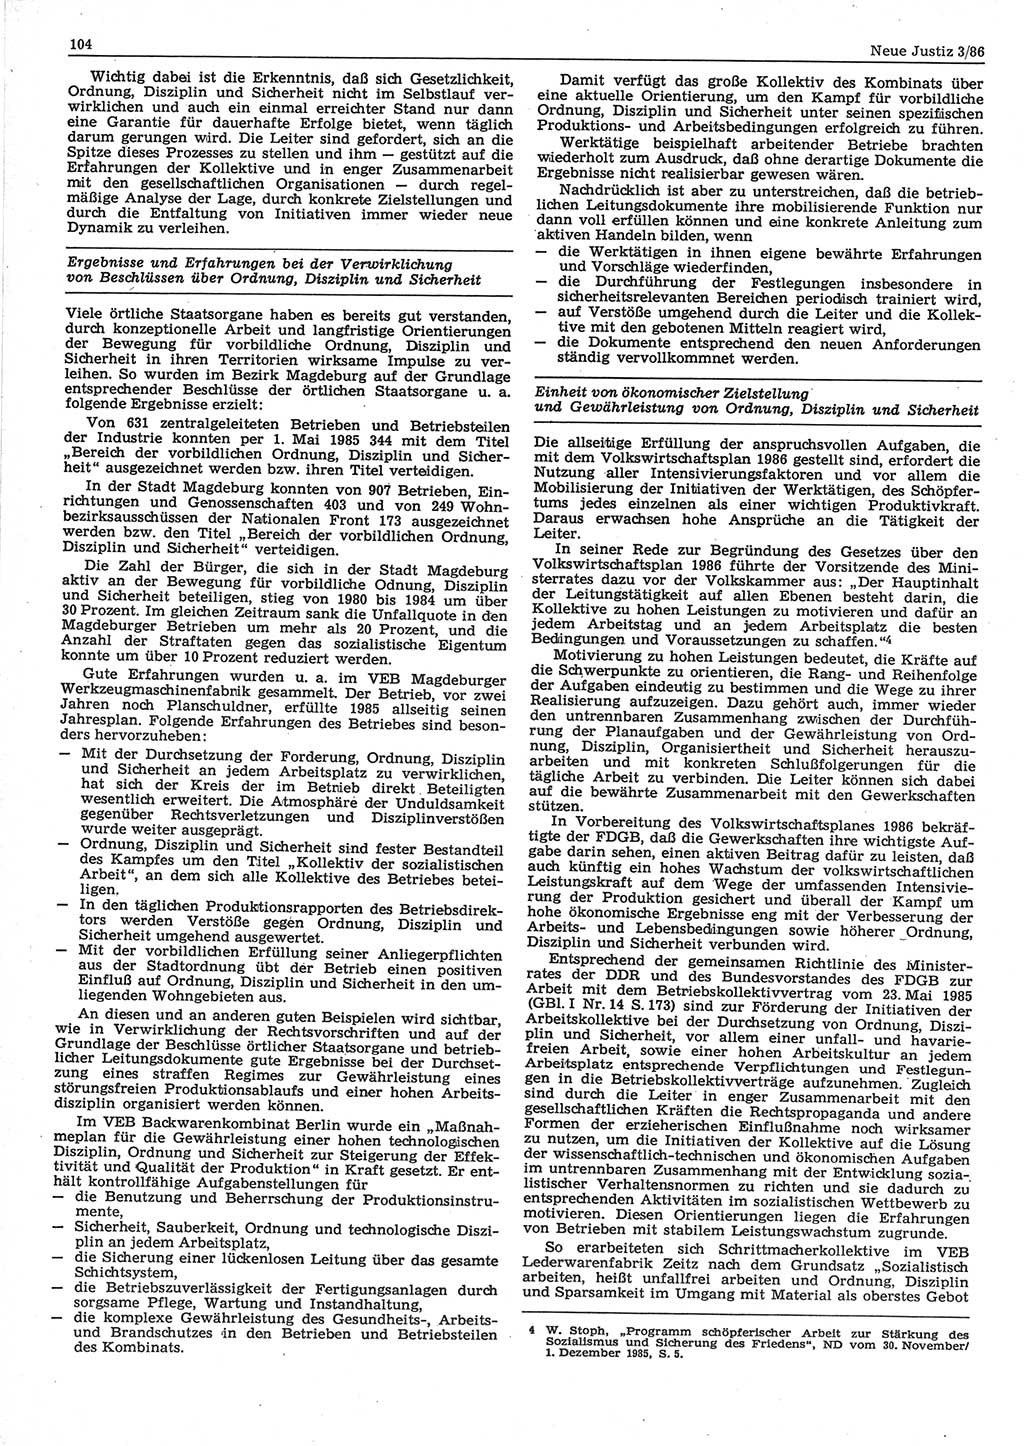 Neue Justiz (NJ), Zeitschrift für sozialistisches Recht und Gesetzlichkeit [Deutsche Demokratische Republik (DDR)], 40. Jahrgang 1986, Seite 104 (NJ DDR 1986, S. 104)